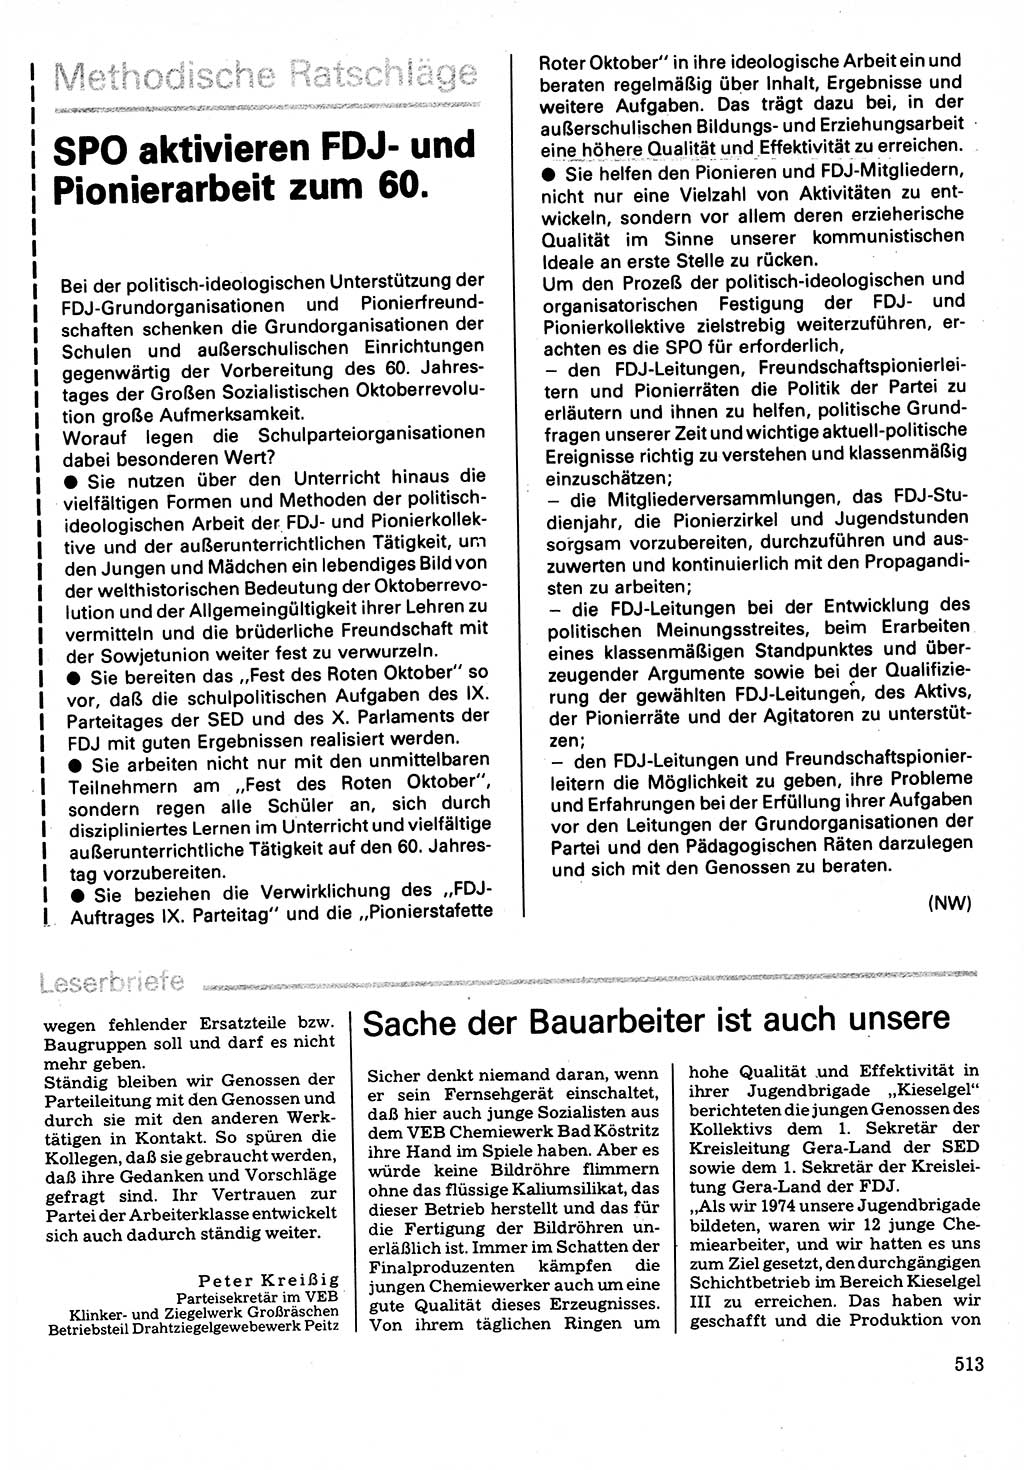 Neuer Weg (NW), Organ des Zentralkomitees (ZK) der SED (Sozialistische Einheitspartei Deutschlands) für Fragen des Parteilebens, 32. Jahrgang [Deutsche Demokratische Republik (DDR)] 1977, Seite 513 (NW ZK SED DDR 1977, S. 513)